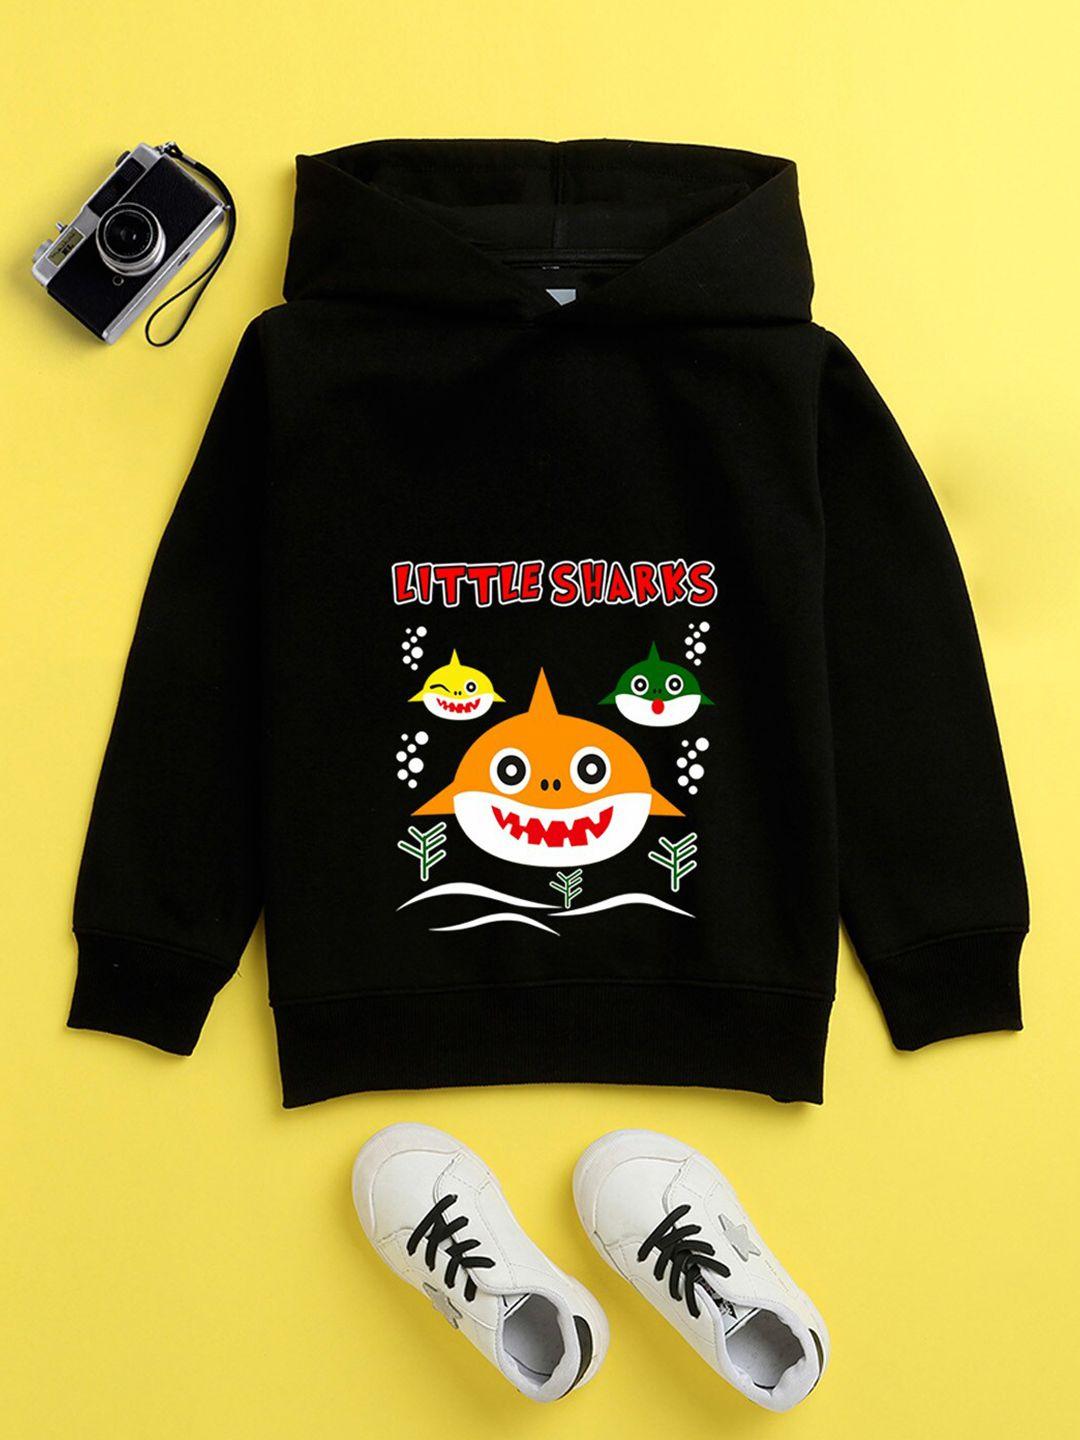 baesd-kids-graphic-printed-hooded-fleece-sweatshirt